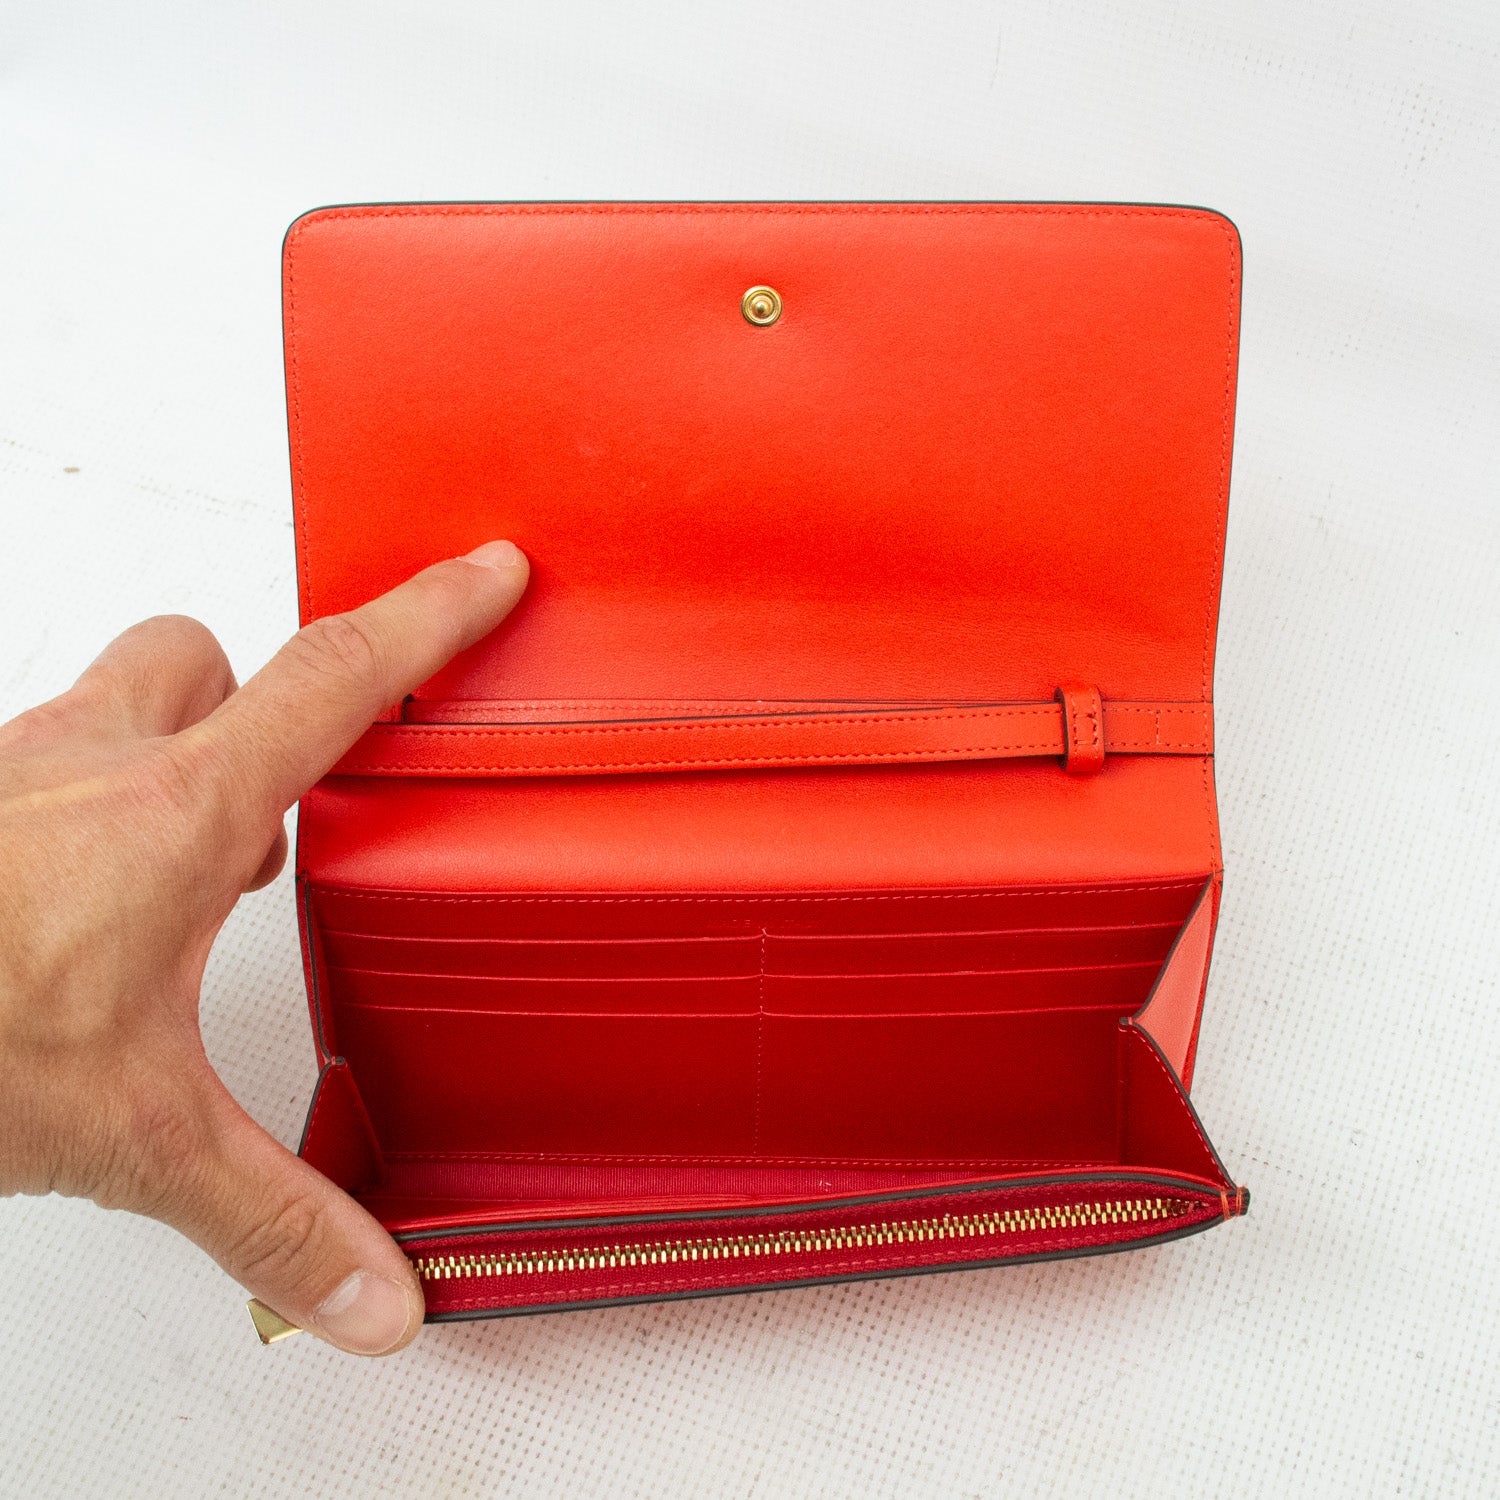 Christian Louboutin Macaron Fuchsia Spiked Wallet - Red/Orange